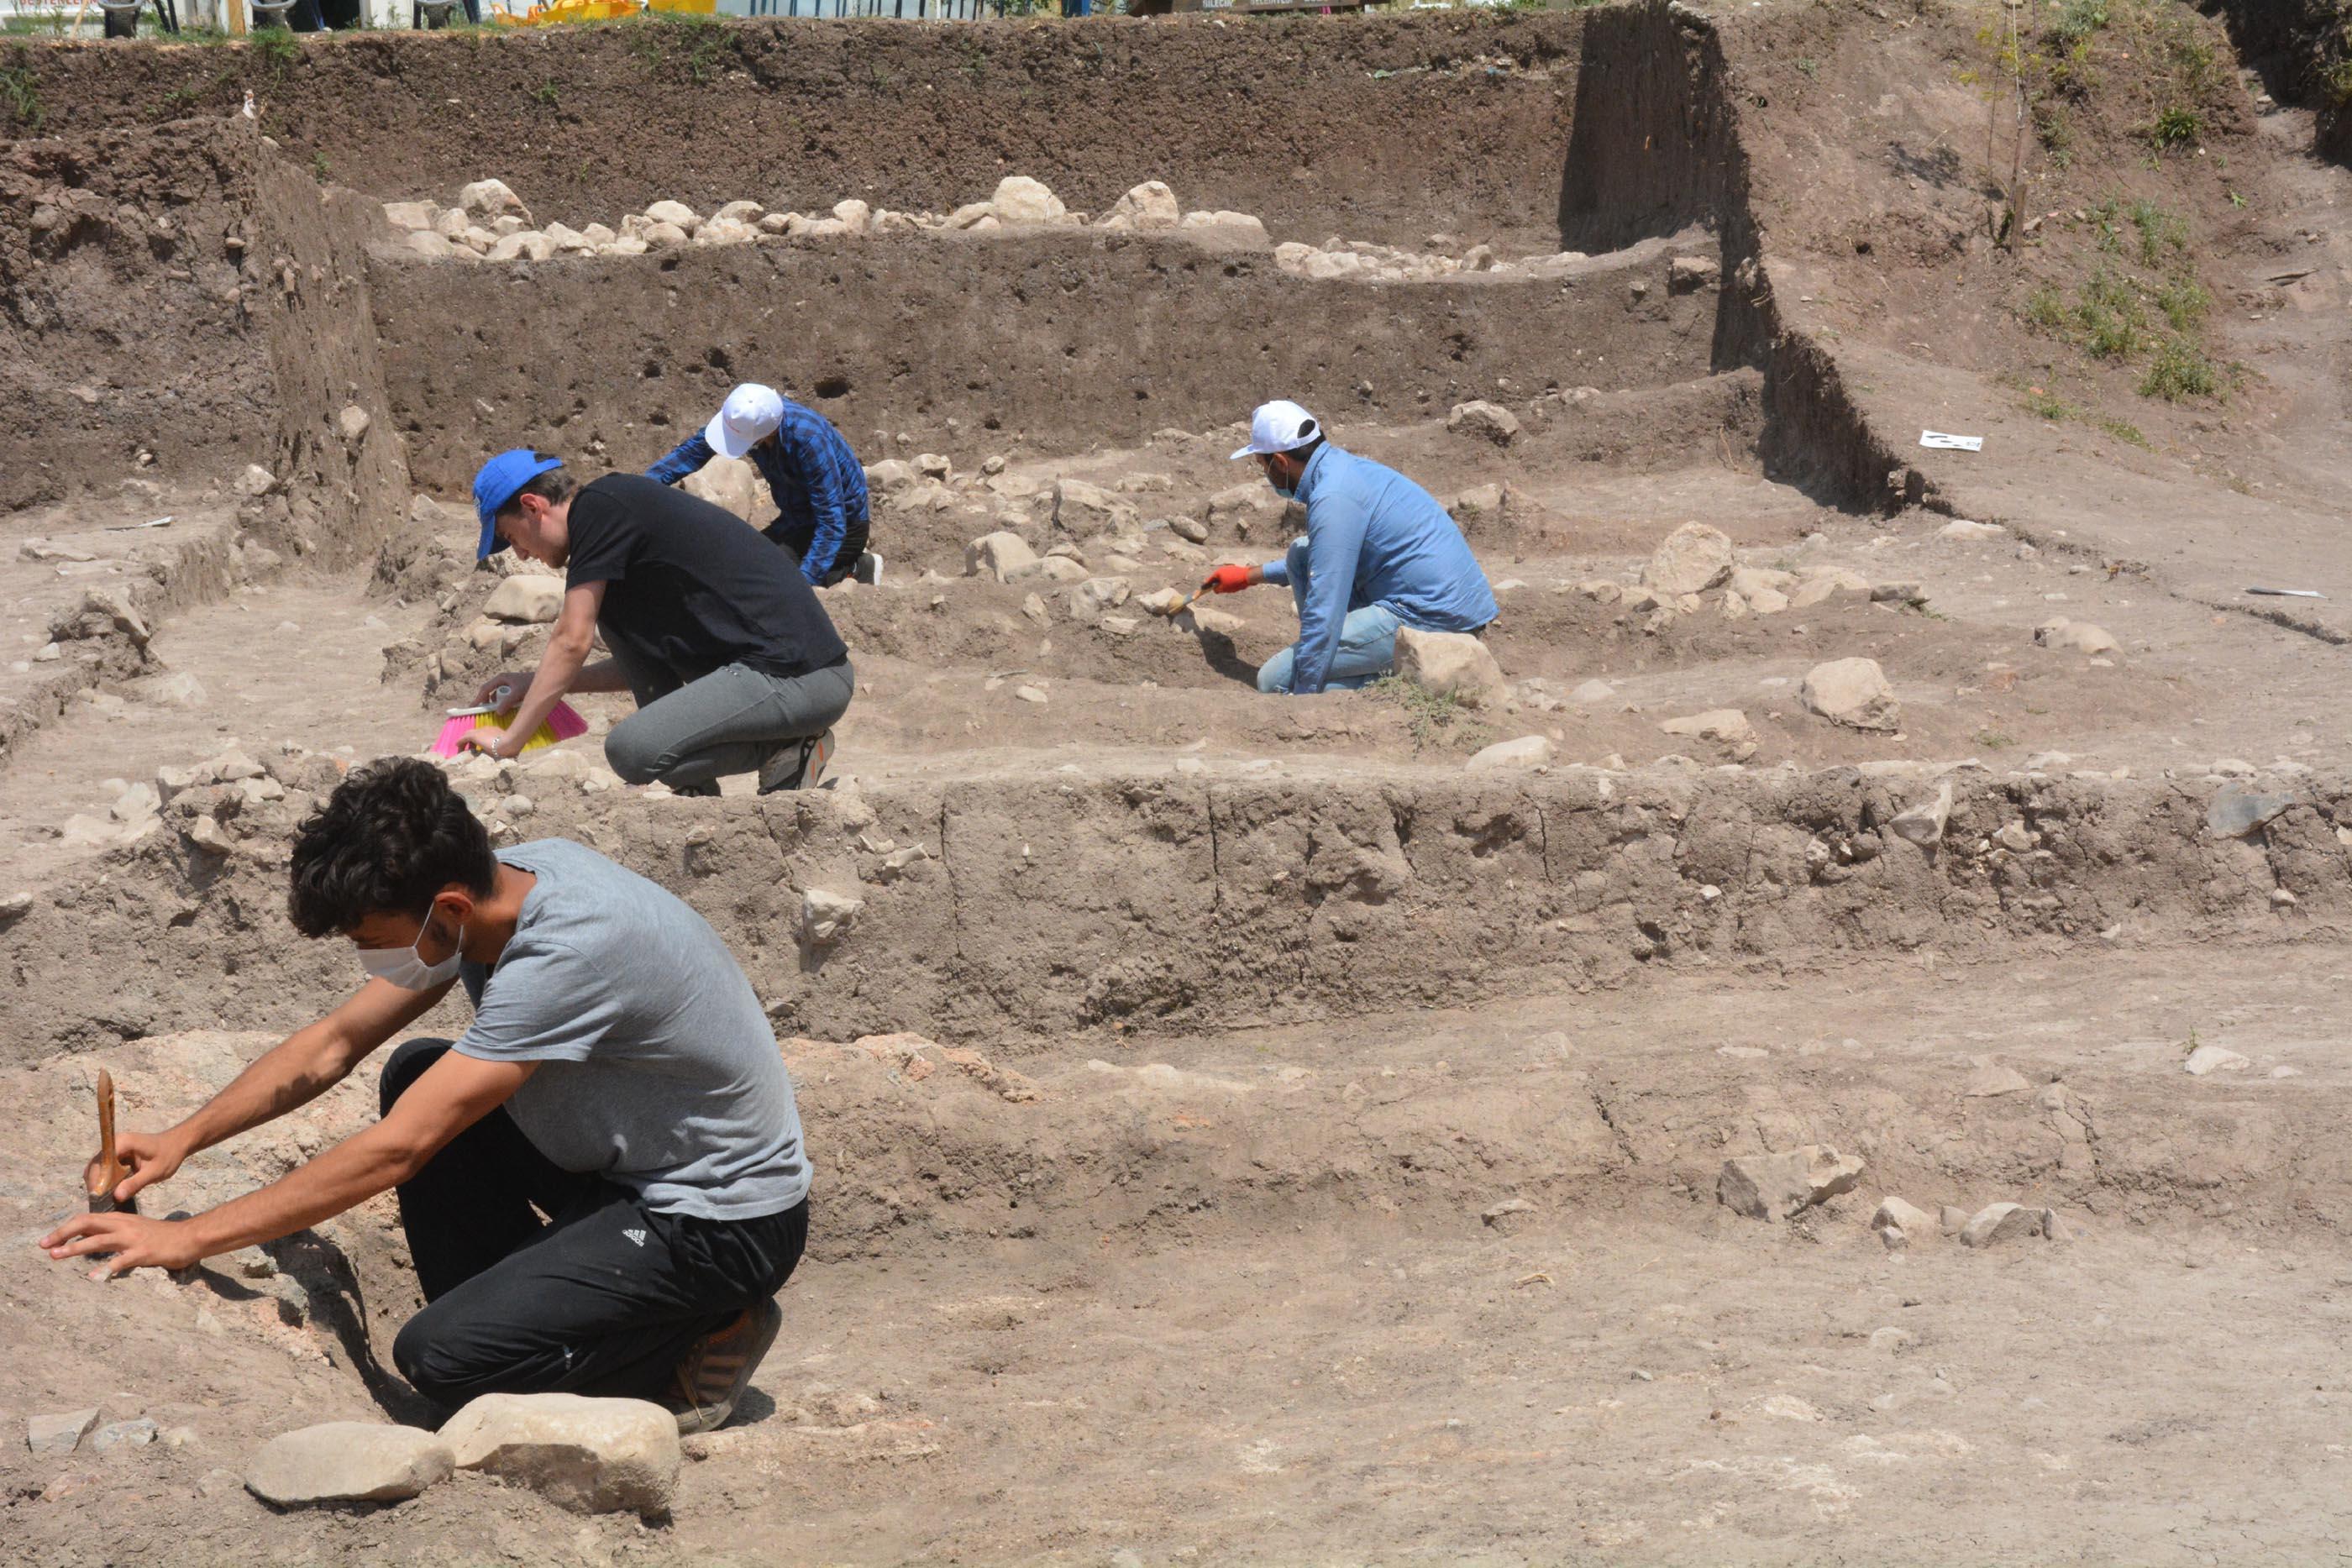 Apartman bahçesinde kazı; 8 bin 500 yıllık 11 insan iskeleti ve 3 delikli müzik aleti bulundu